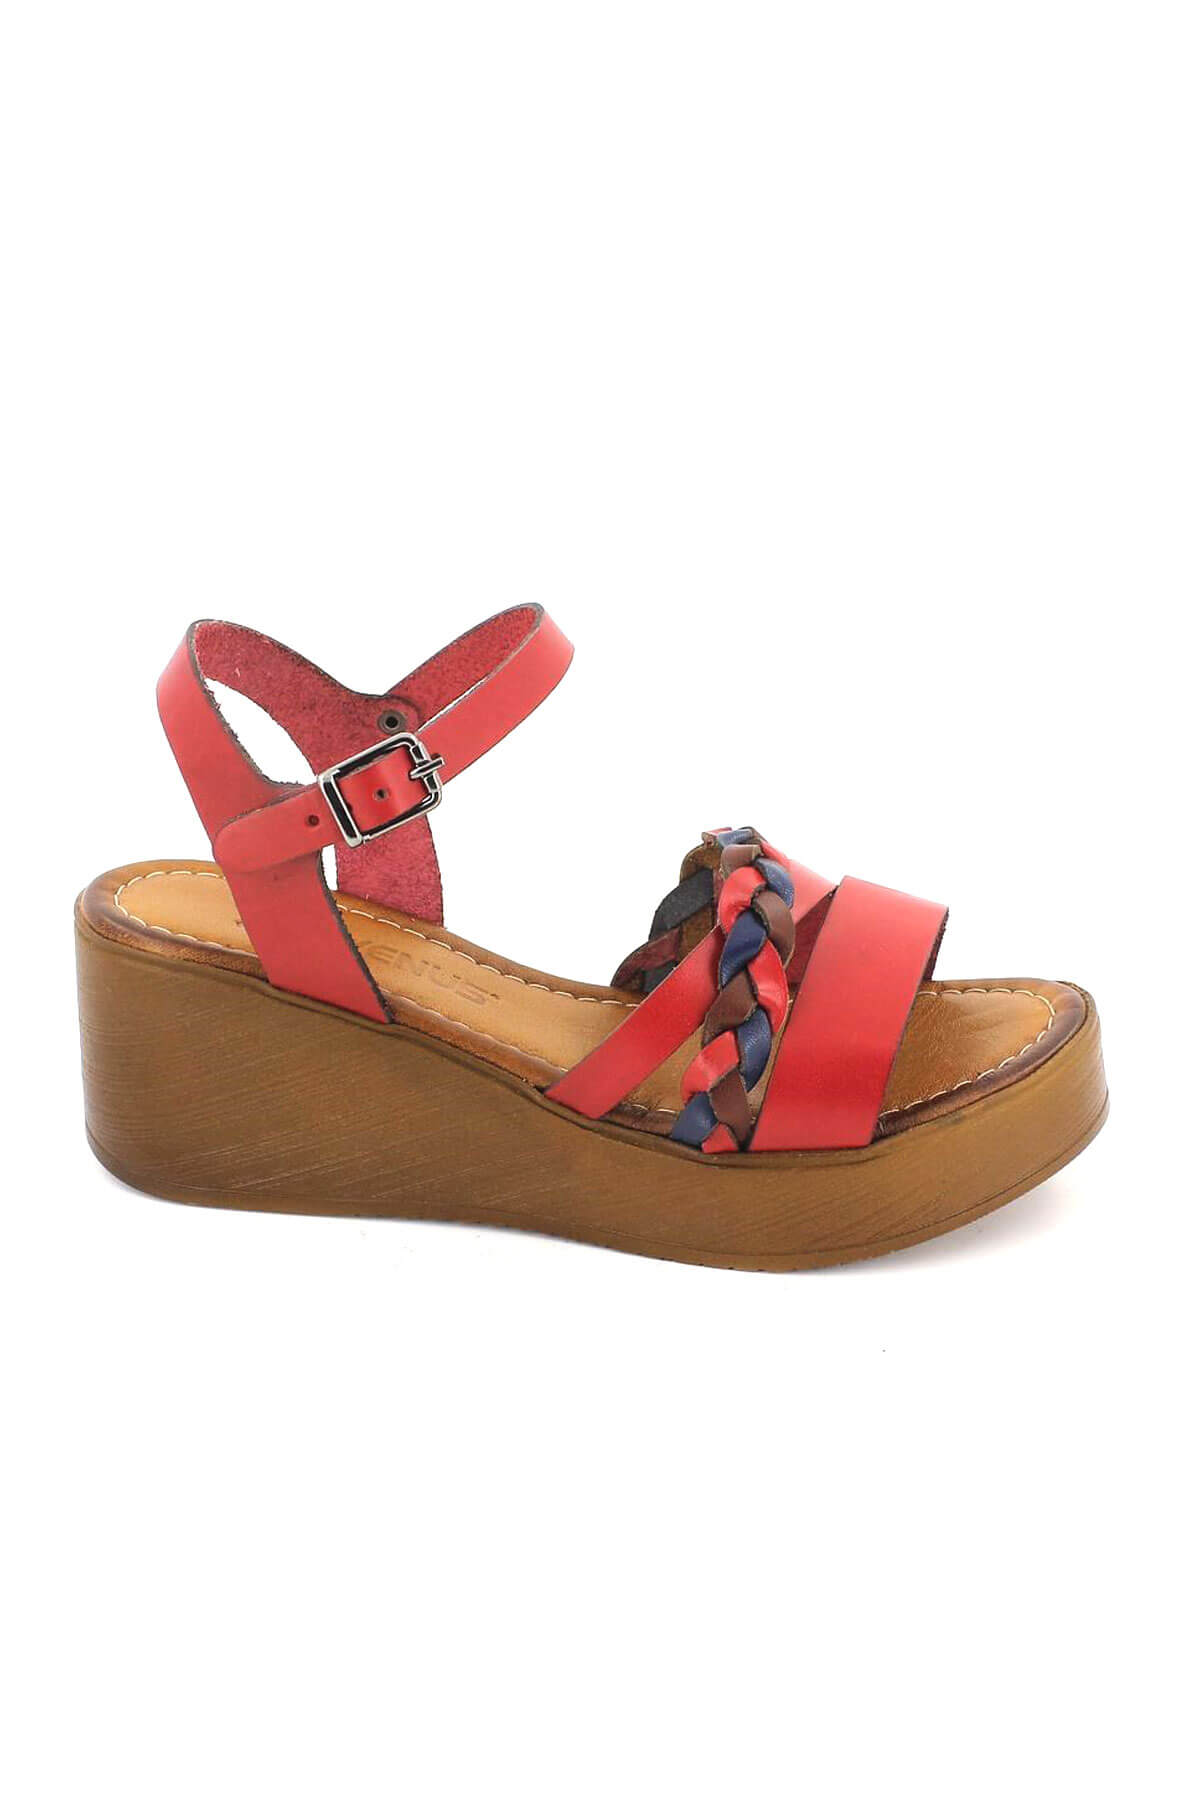 Kadın Deri Dolgu Topuk Sandalet Kırmızı 21983400